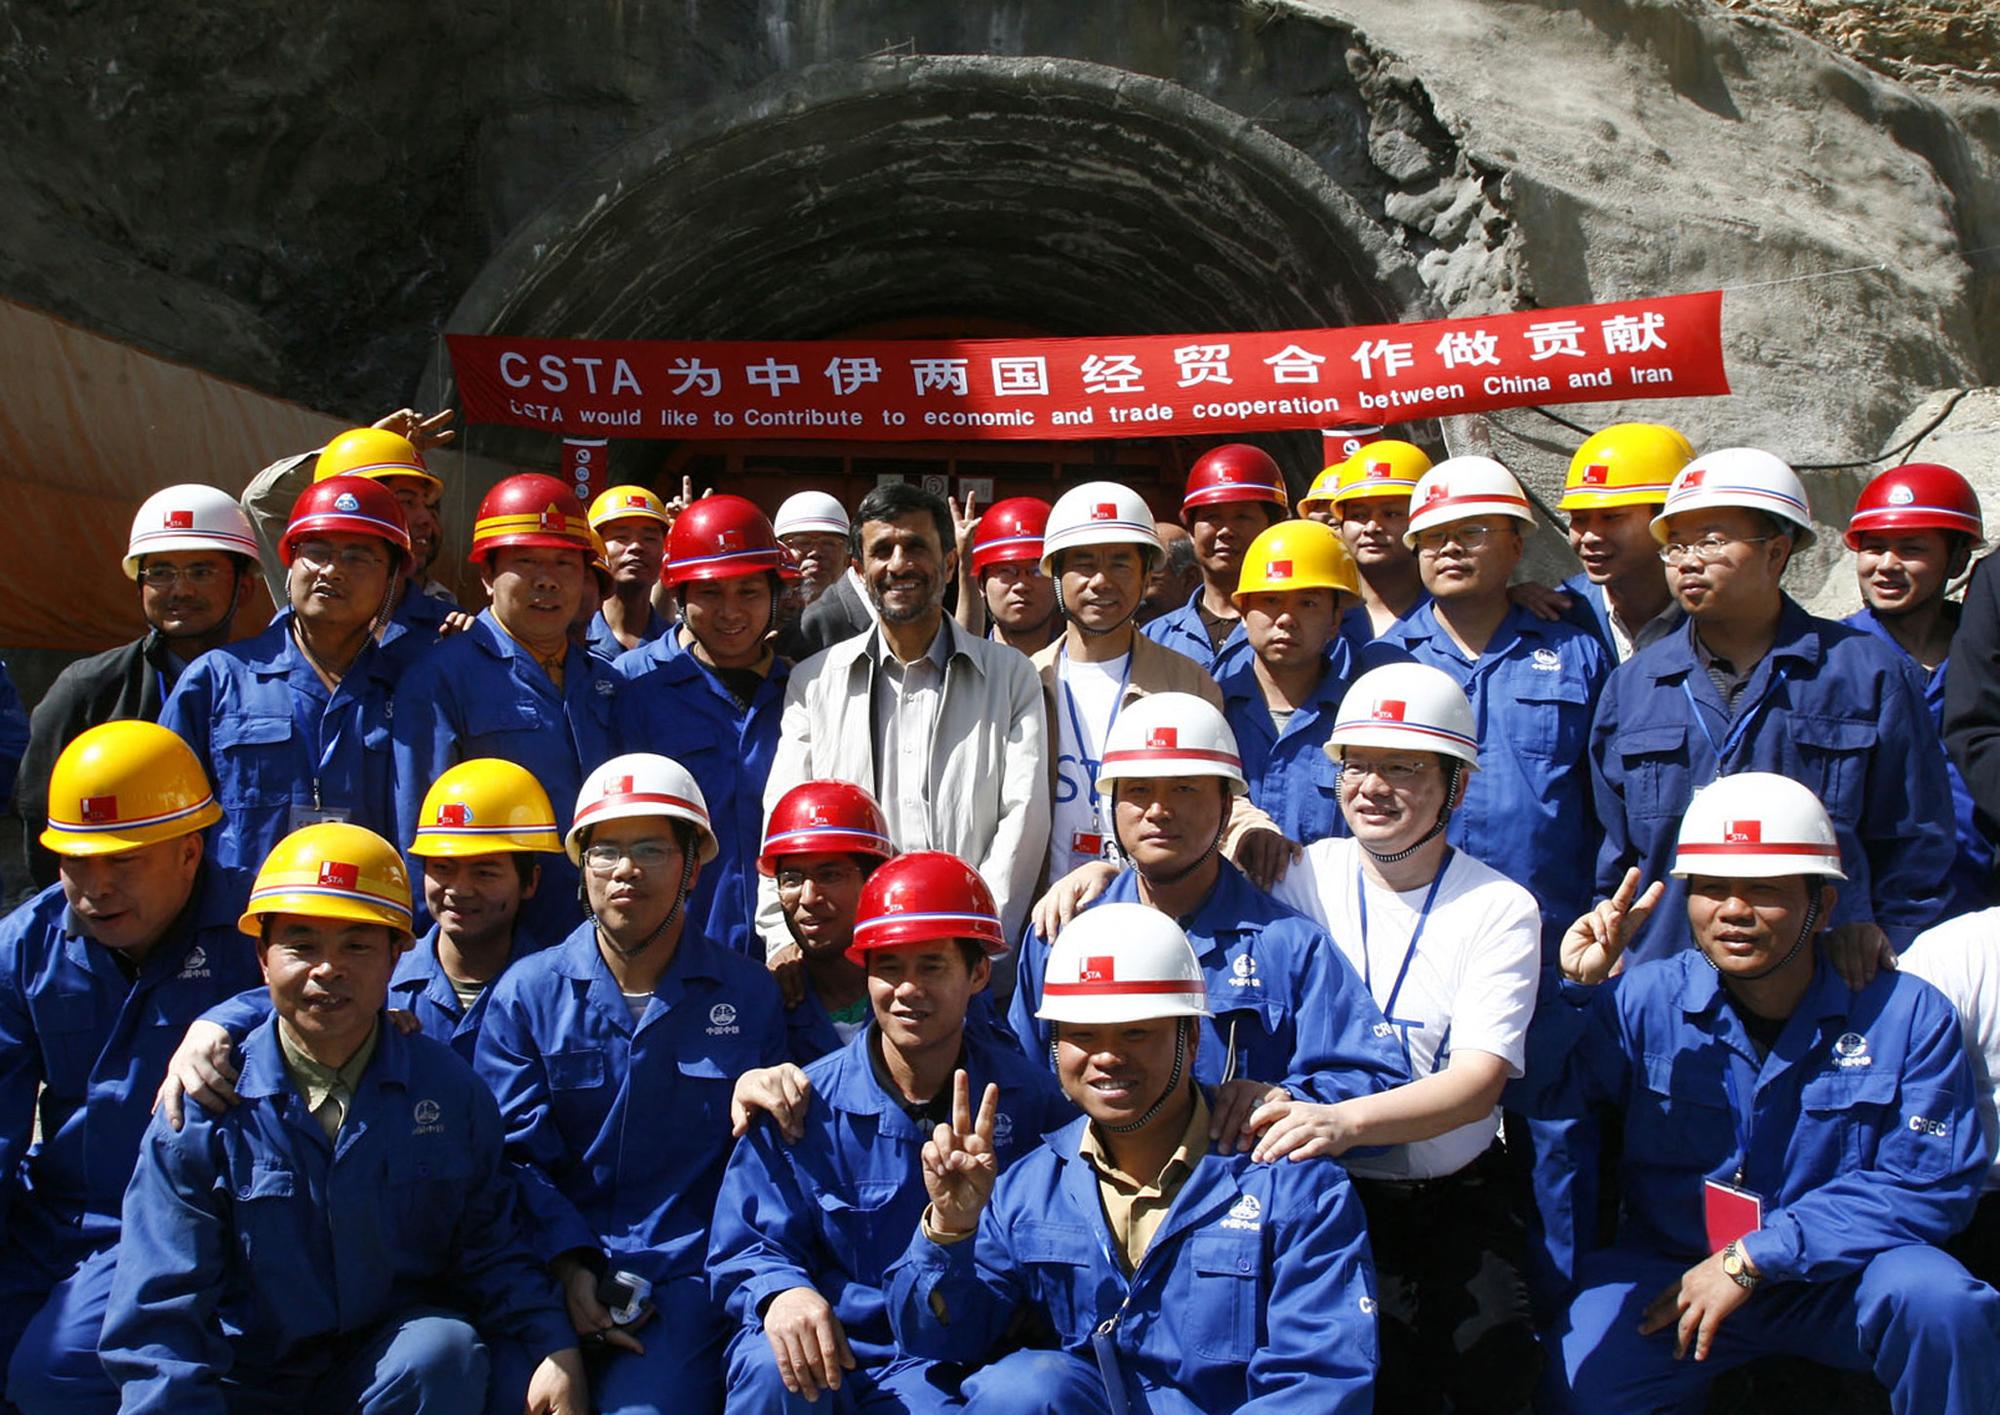 Le président iranien de l'époque Mahmoud Ahmadinejad pose pour une photo avec des ouvriers et des ingénieurs chinois à l'extérieur d'un tunnel sur la route entre Téhéran et Chalus, au nord-ouest de Téhéran, le 29 juin 2009, lors d'une visite d'inspection du projet "Autoroute du Nord". [afp - Amir Pourmand]